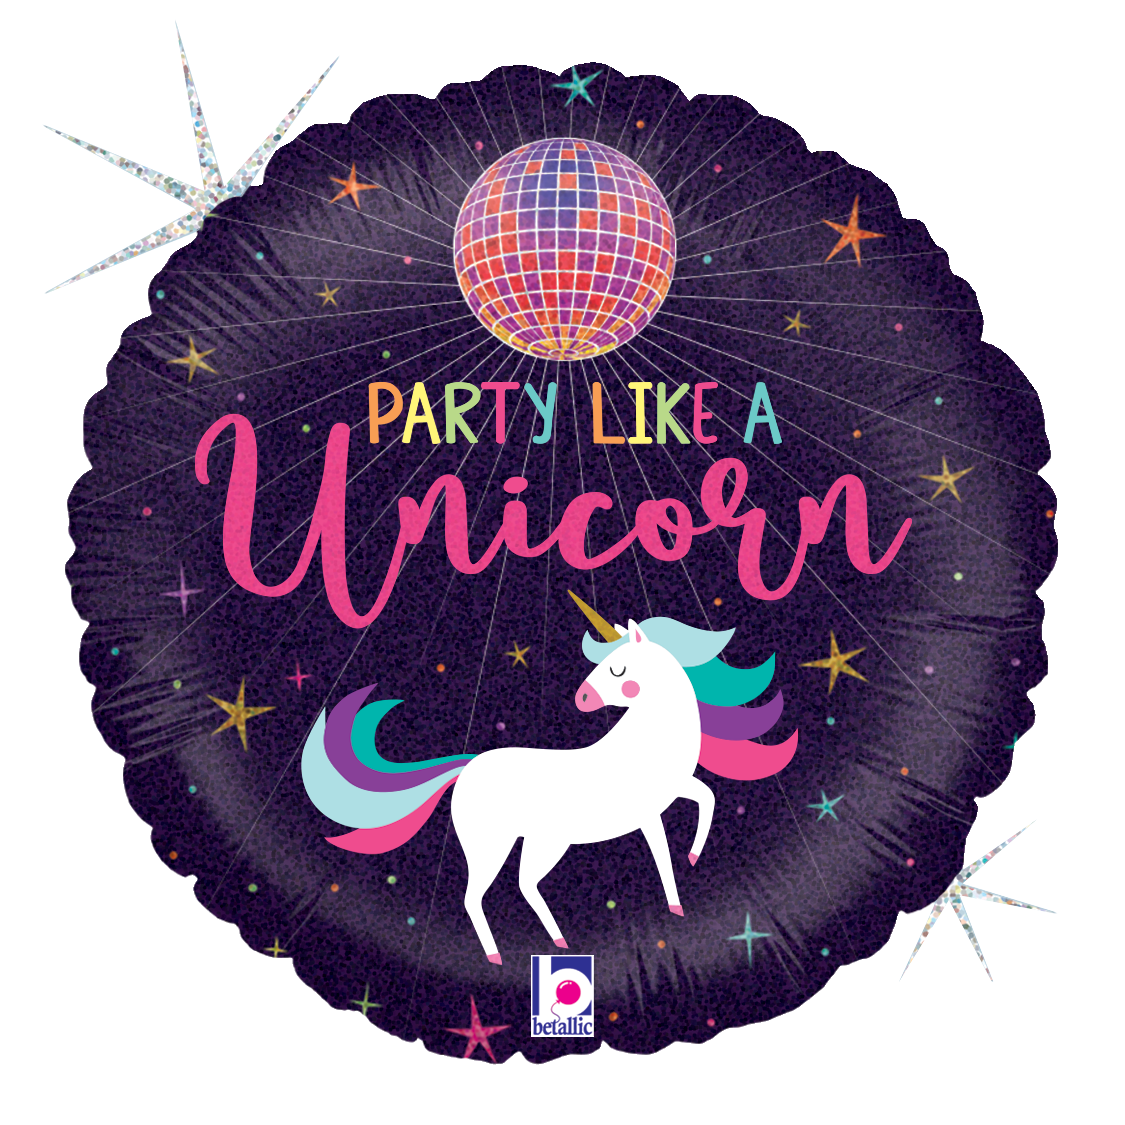 Party Like A Unicorn!